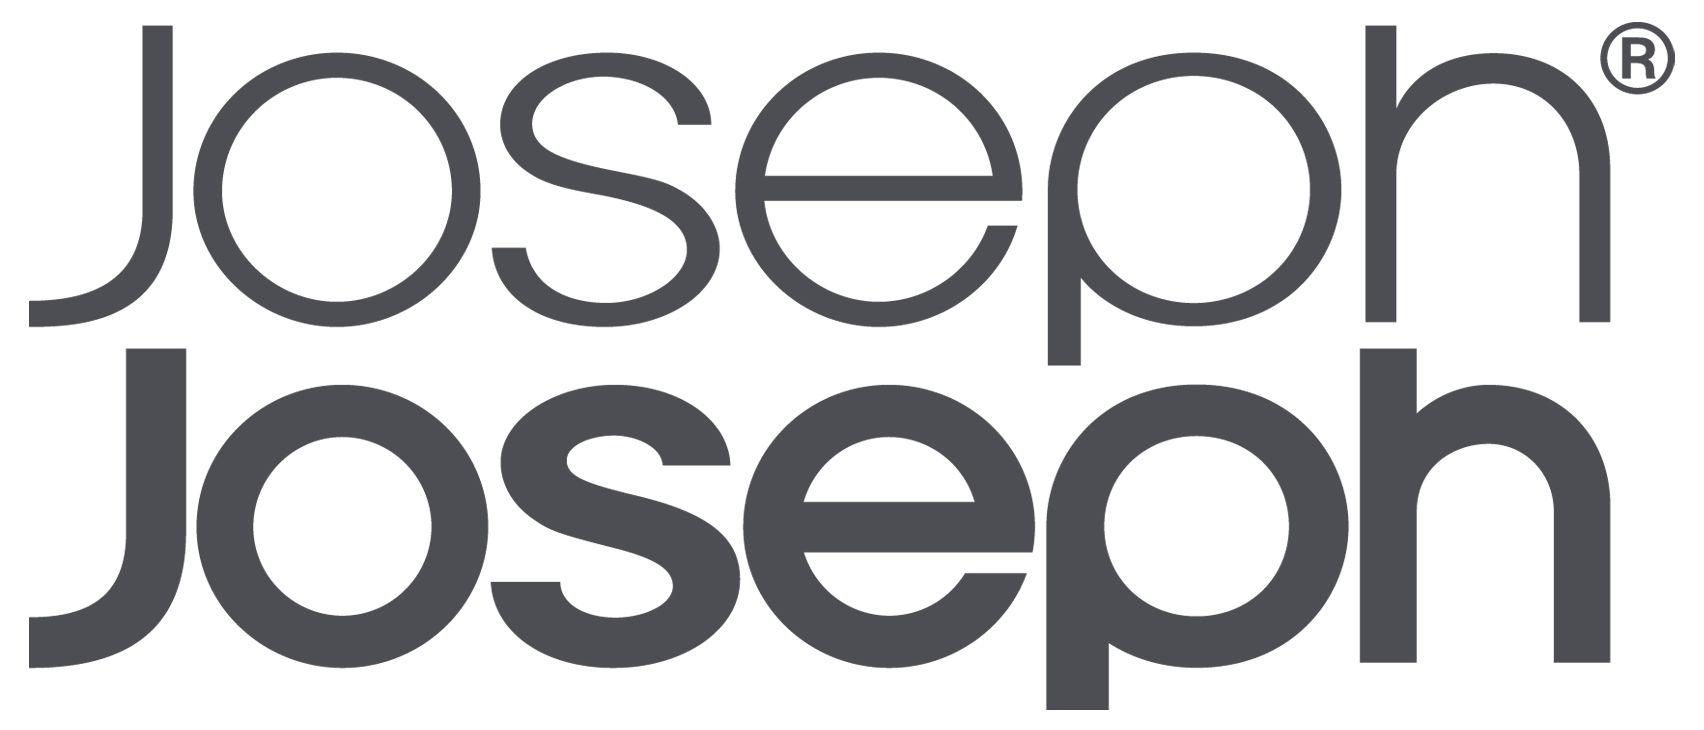 Joseph Logo - Joseph Joseph Brand Logo. ETC For The Home